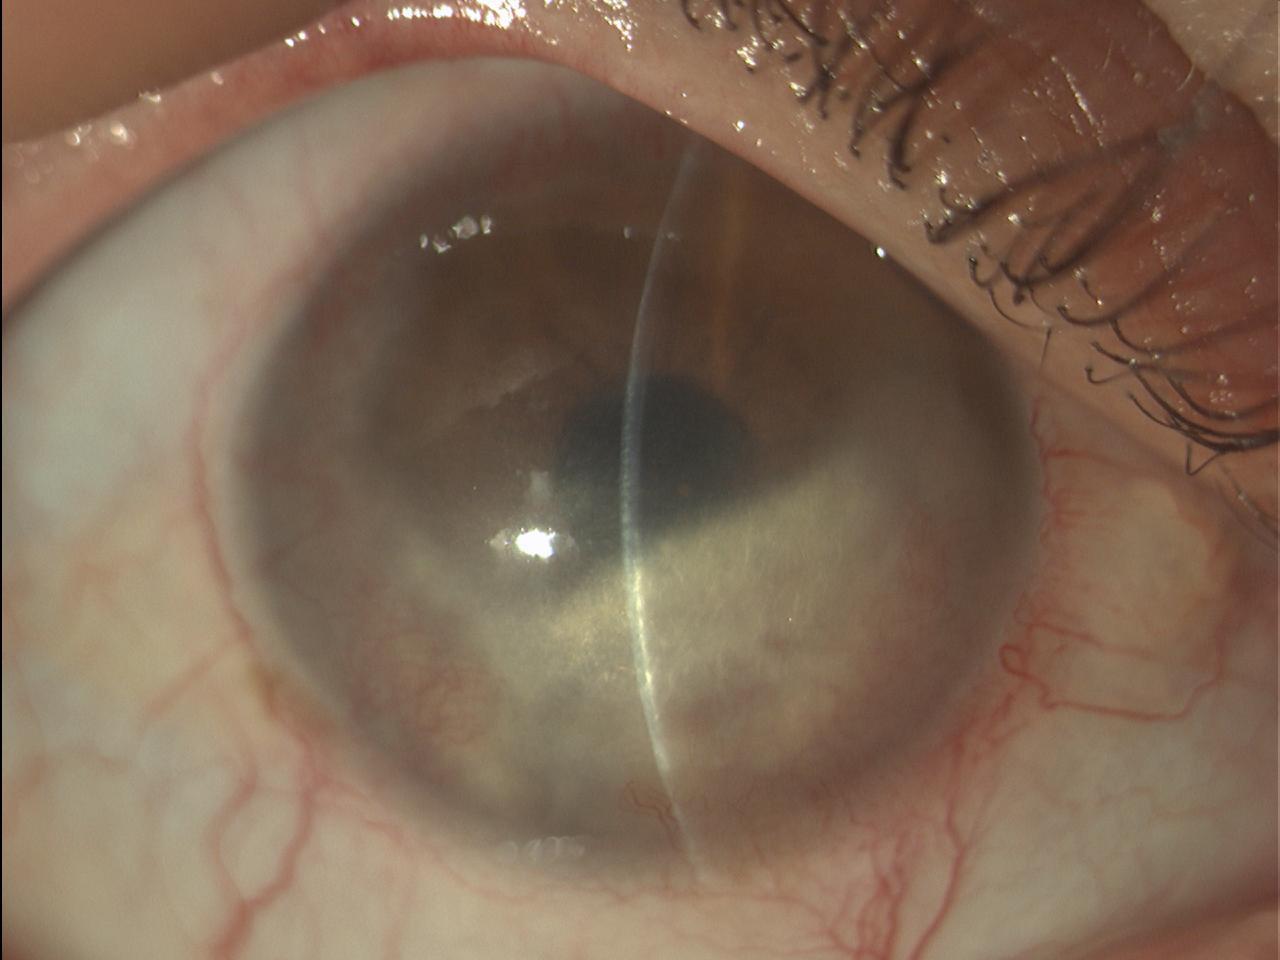 Cheratite stromale con degenerazione lipidica in malattia erpetica oculare